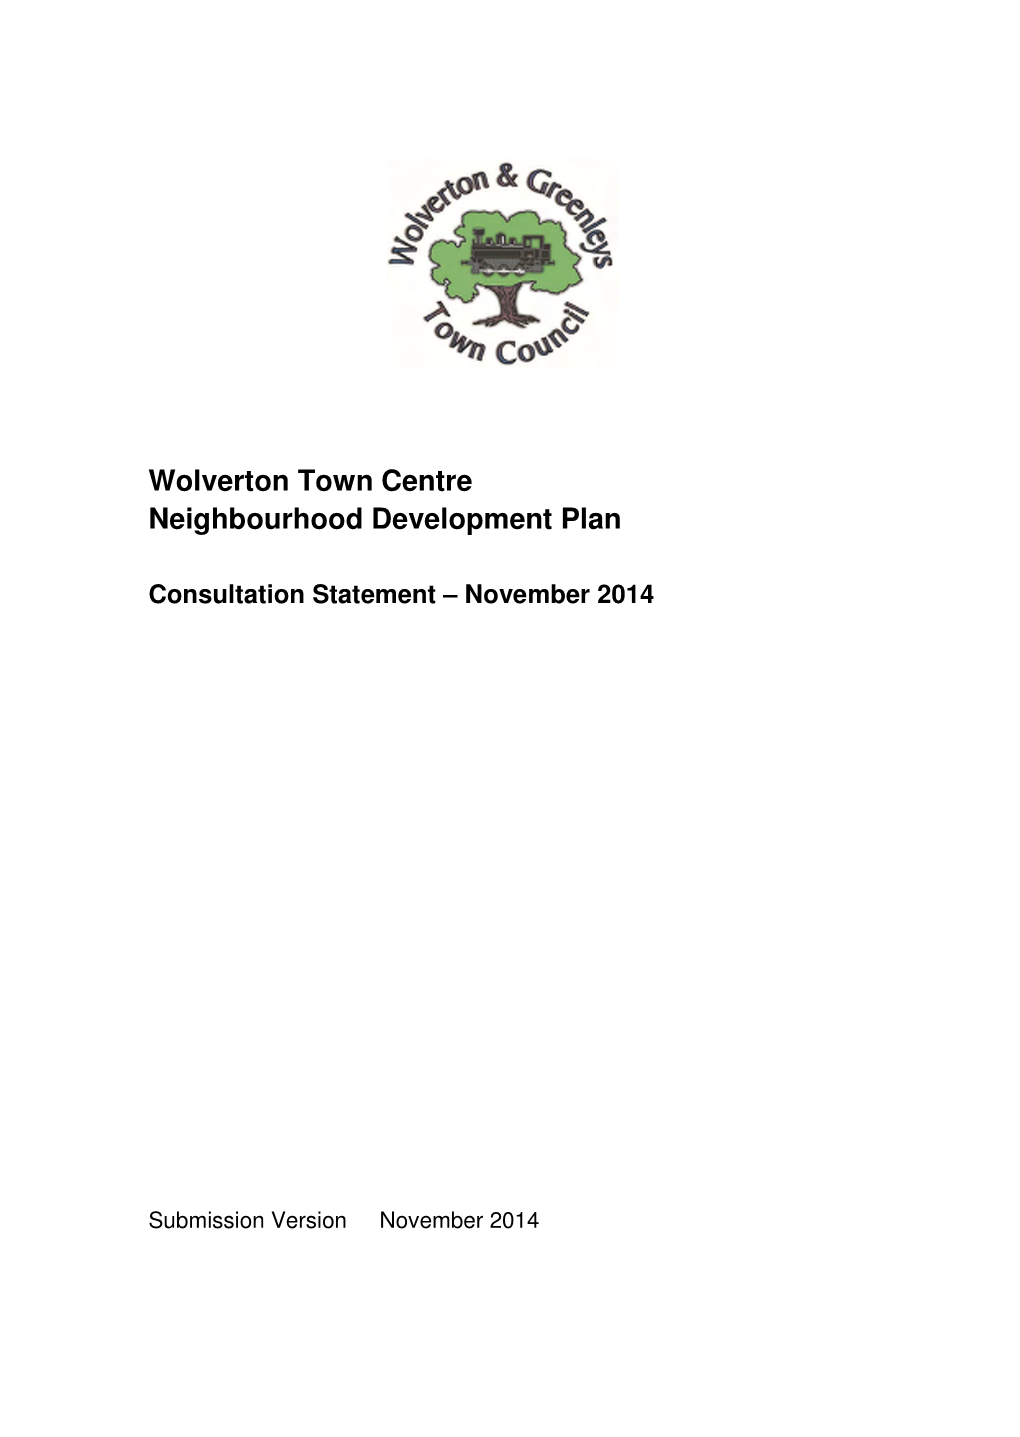 Wolverton Town Centre Neighbourhood Development Plan